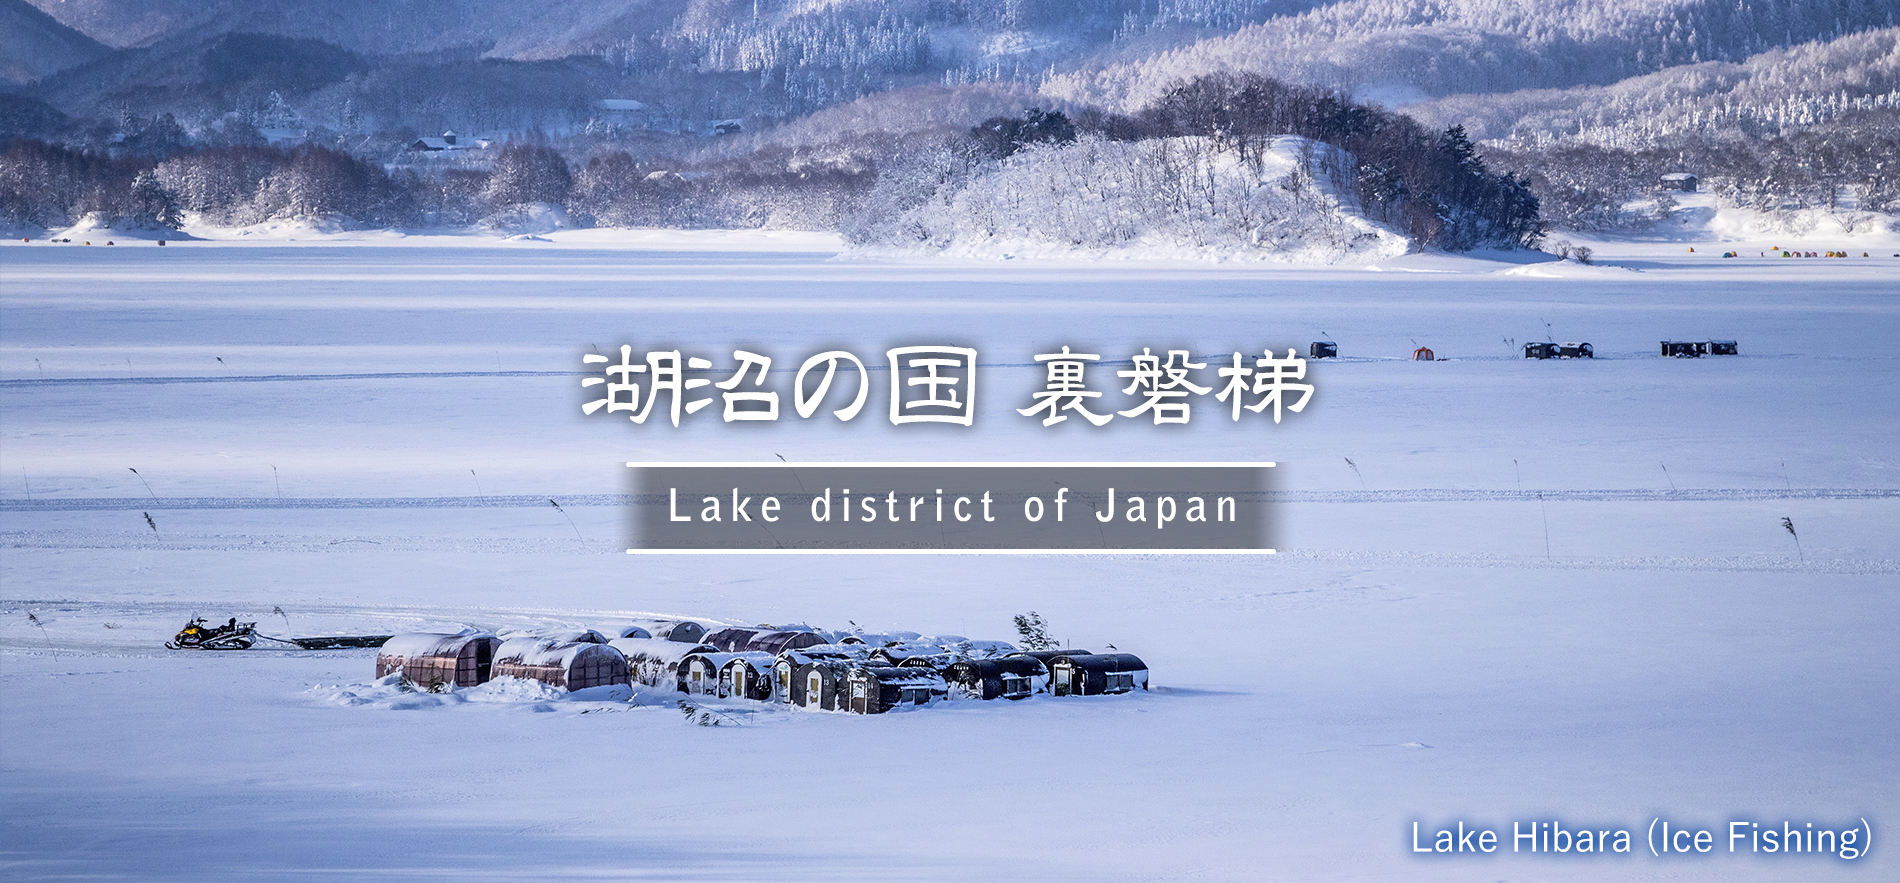 Lake Hibara (Ice Fishing)